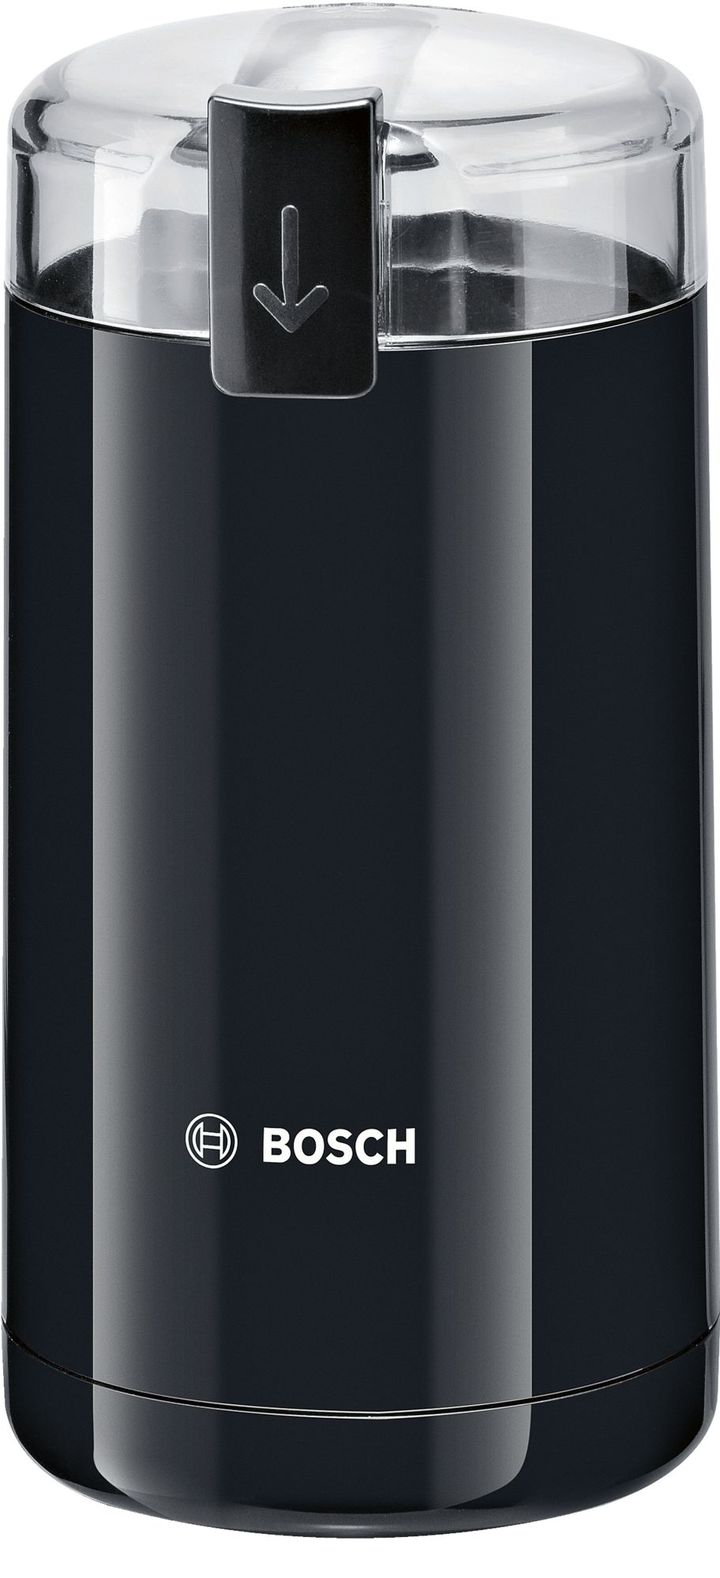 TSM6A013B coffee grinder with blade - Black - Bosch